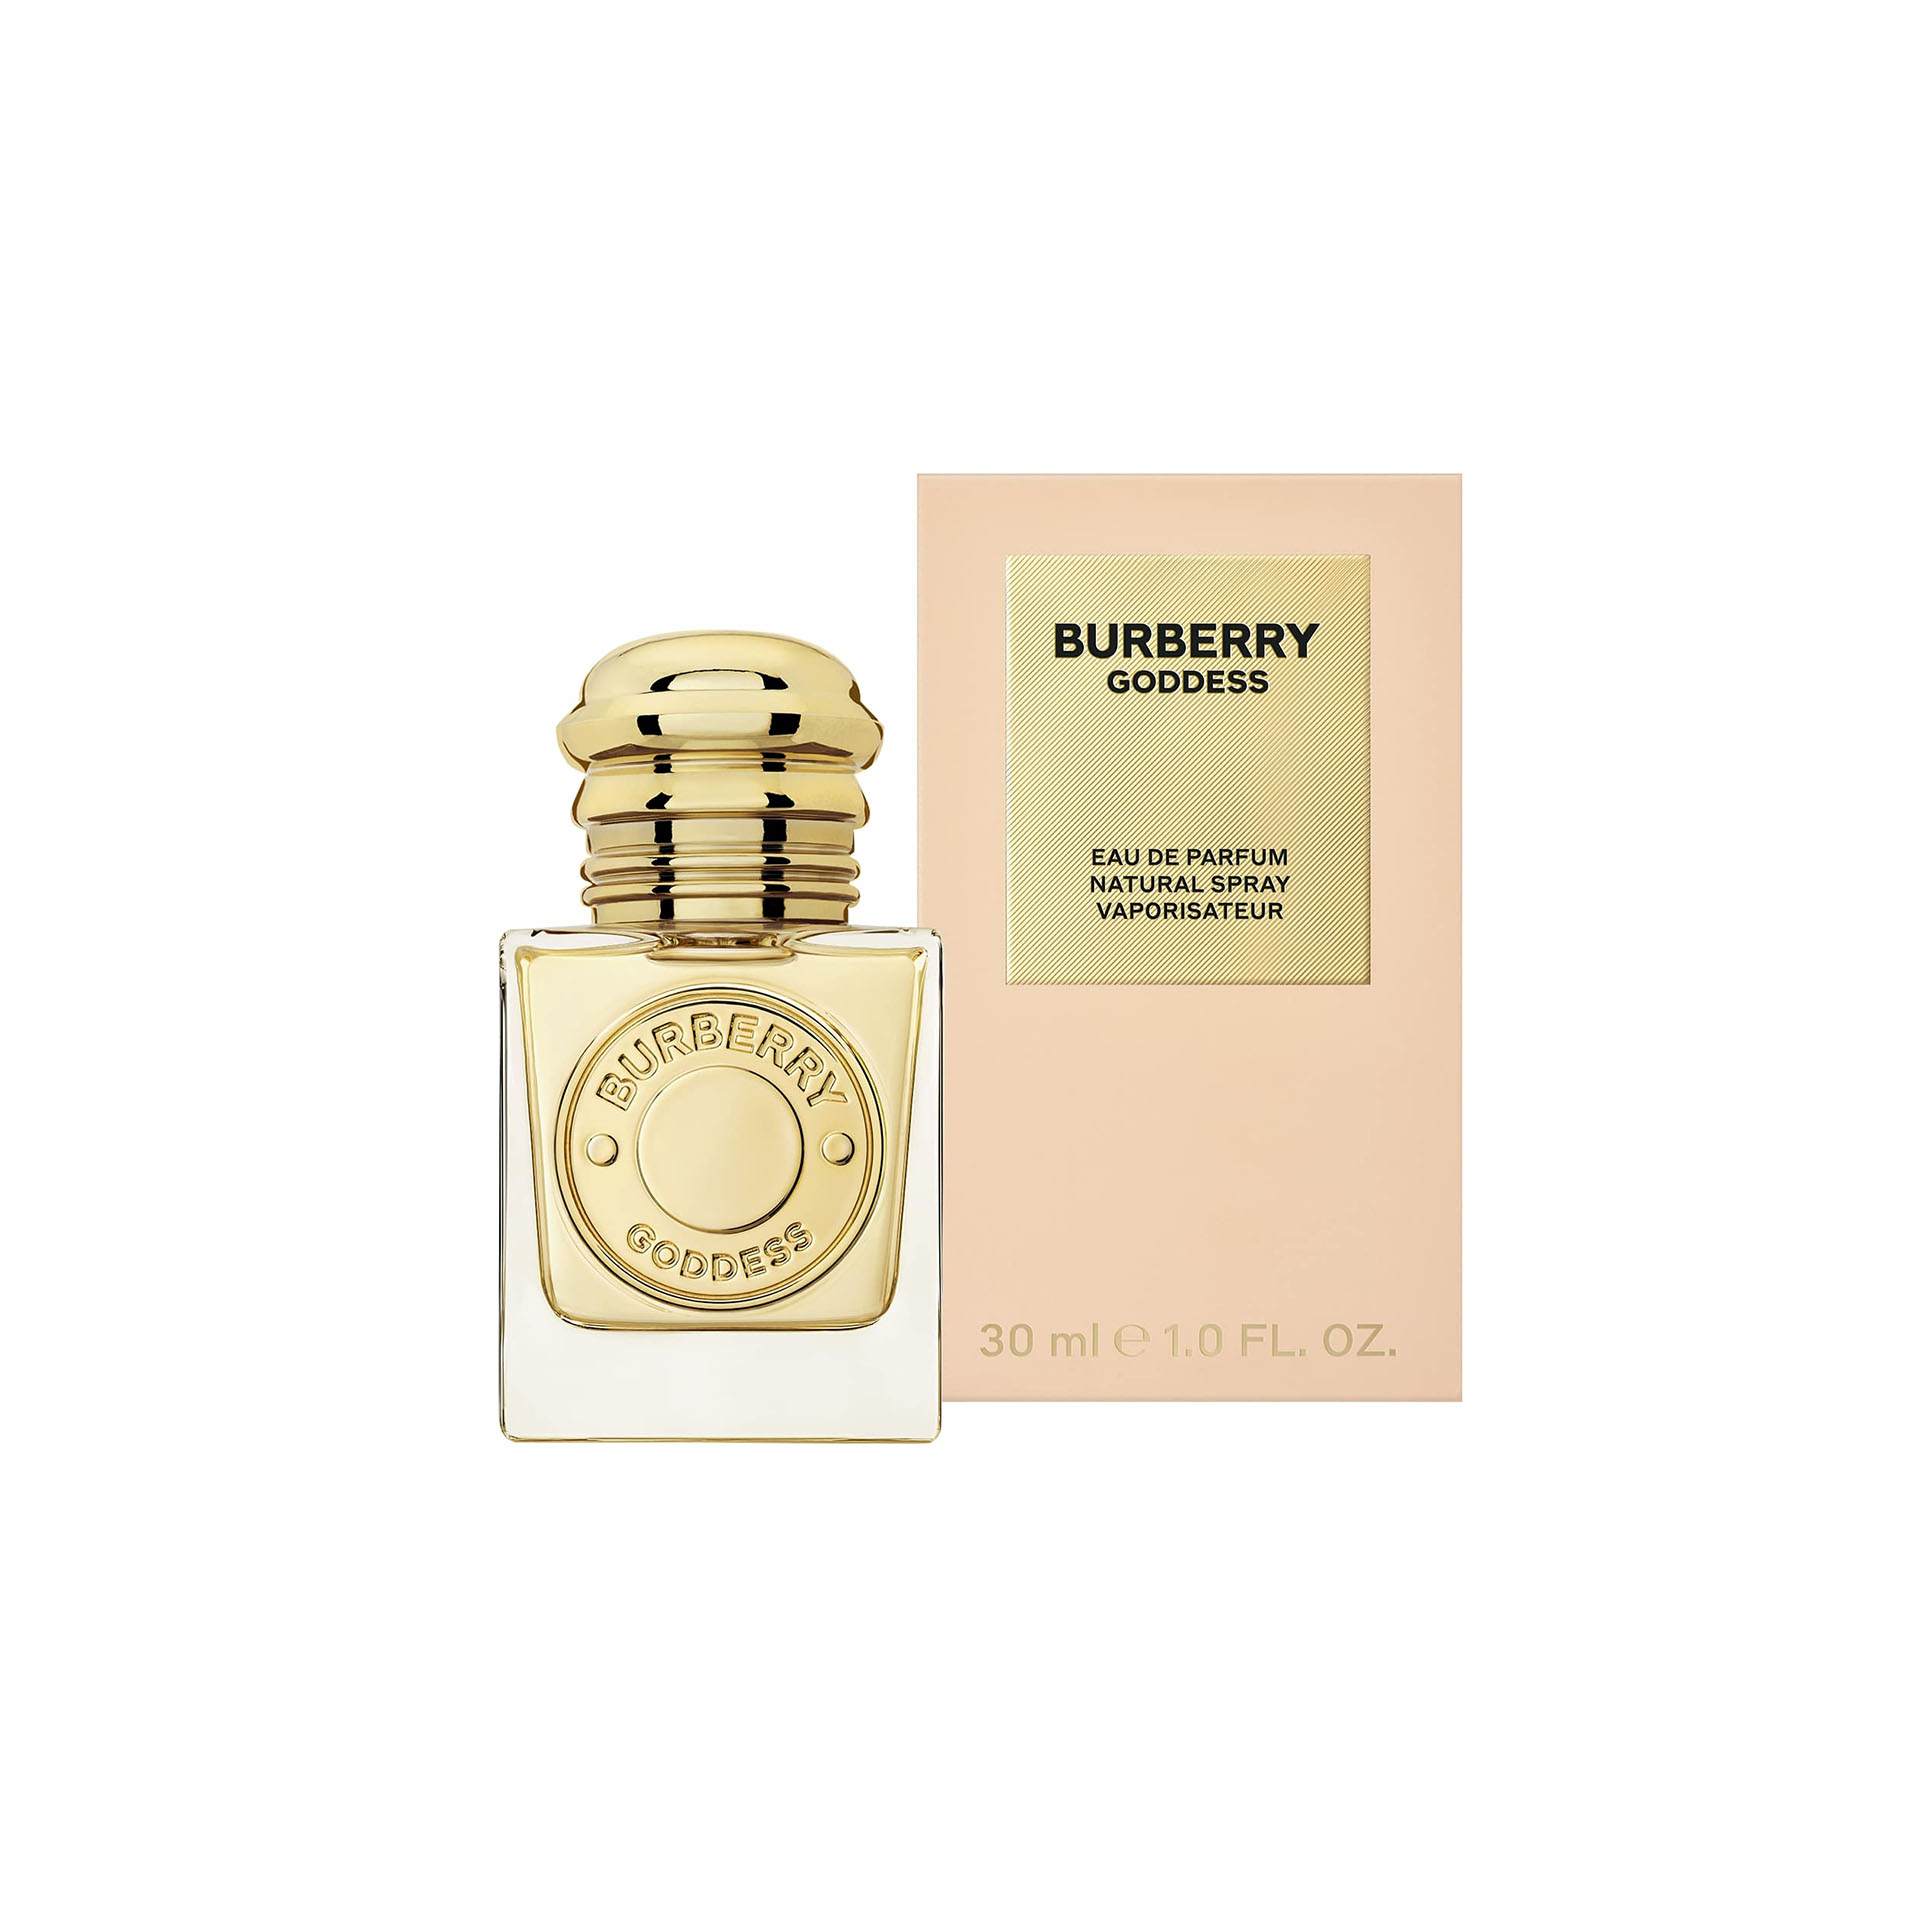 BURBERRY Goddess Eau de Parfum for Women (30ml)